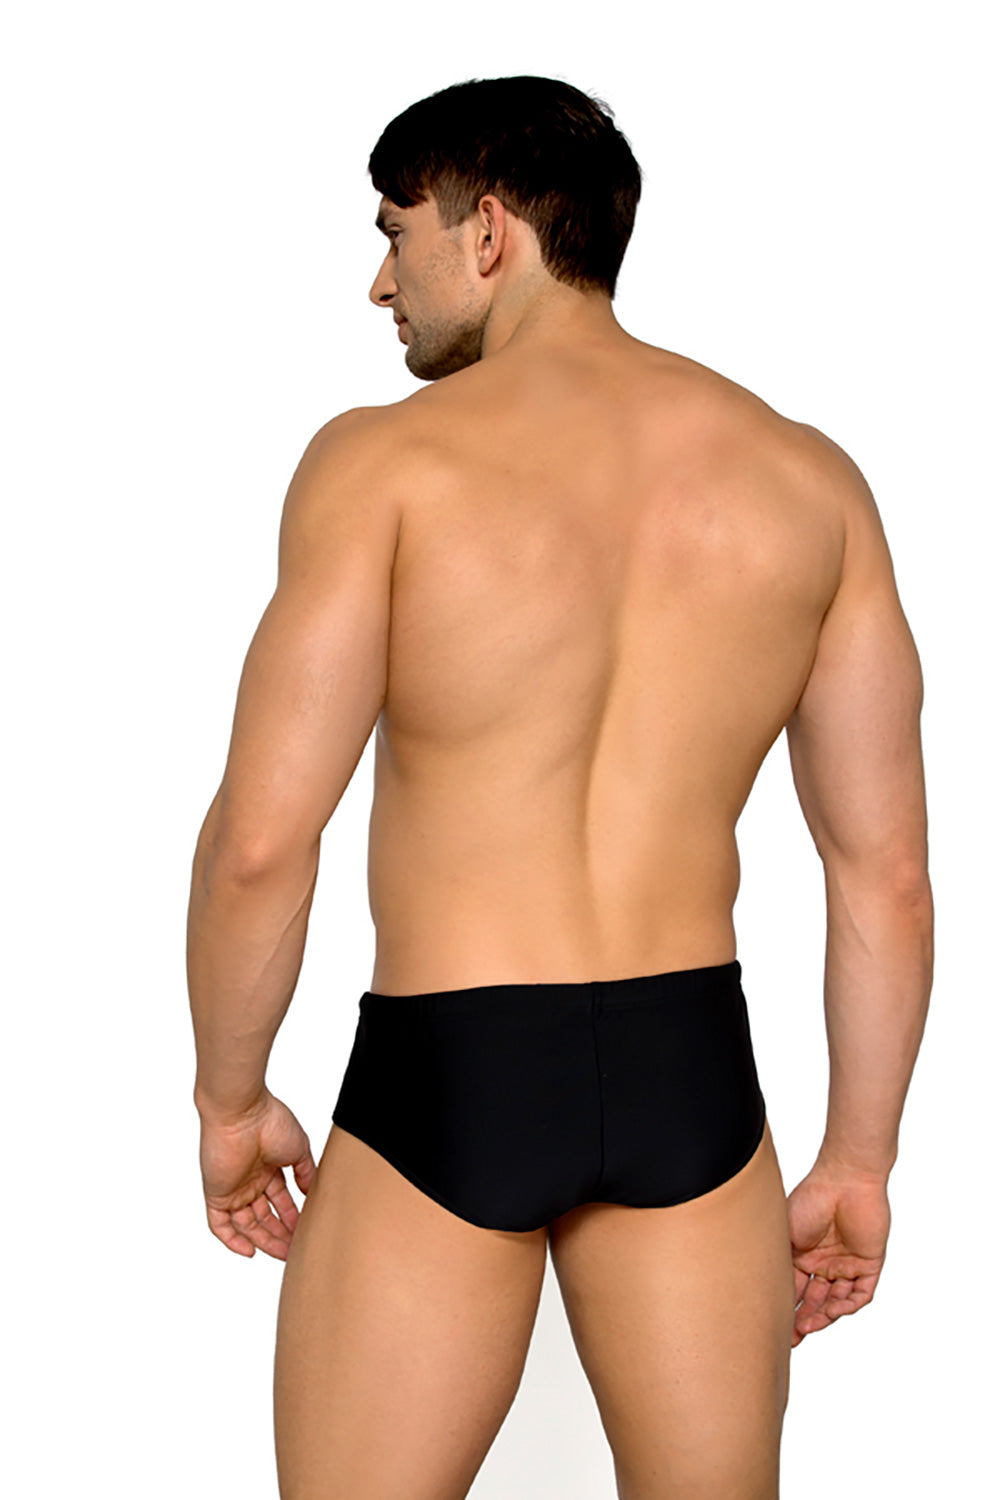 Swimming trunks model 182793 Elsy Style Boxers Shorts, Slips, Swimming Briefs for Men